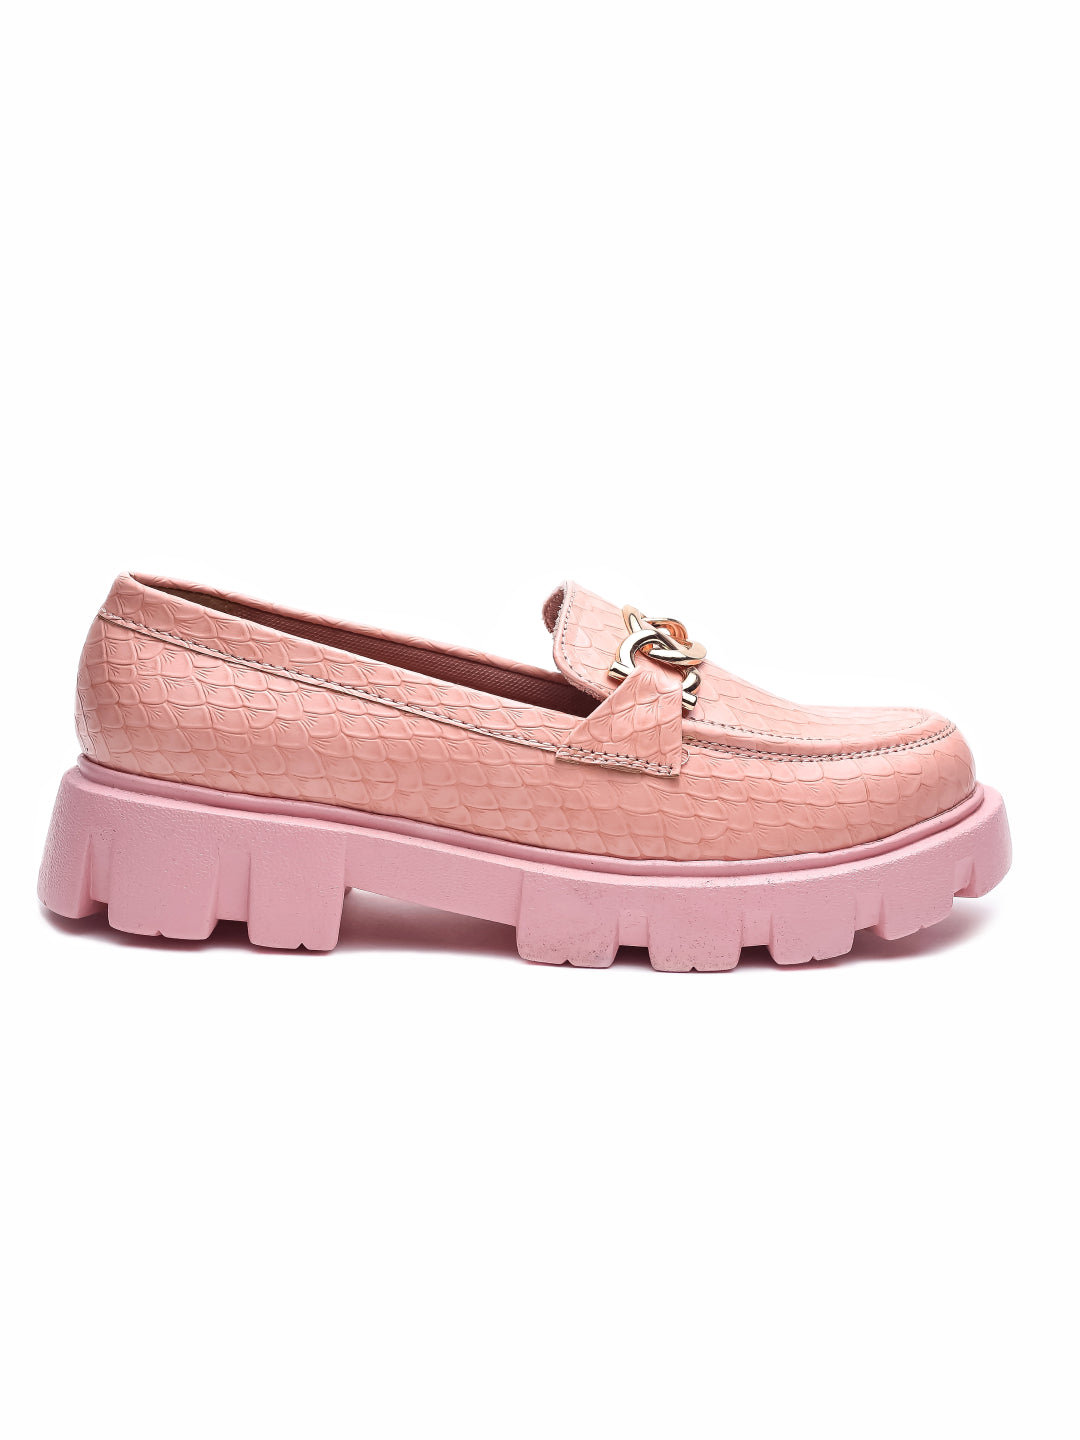 Brauch Pink Patterned Embellished Loafer Shoe